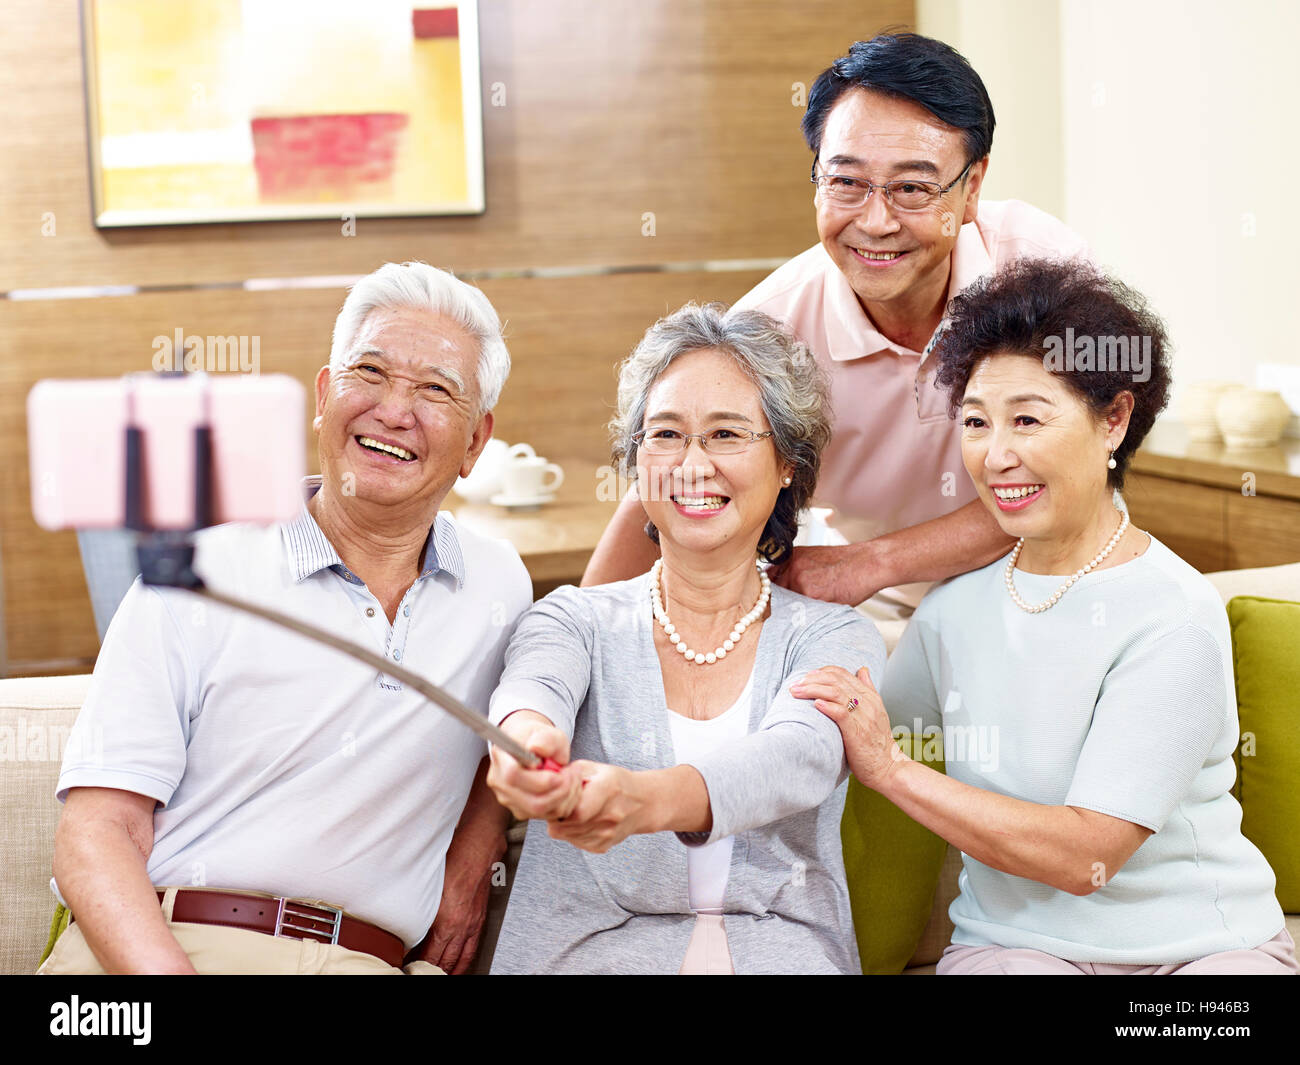 Deux couples asiatiques senior en tenant un téléphone mobile utilisant selfies sur un stick selfies, heureux et souriant Banque D'Images